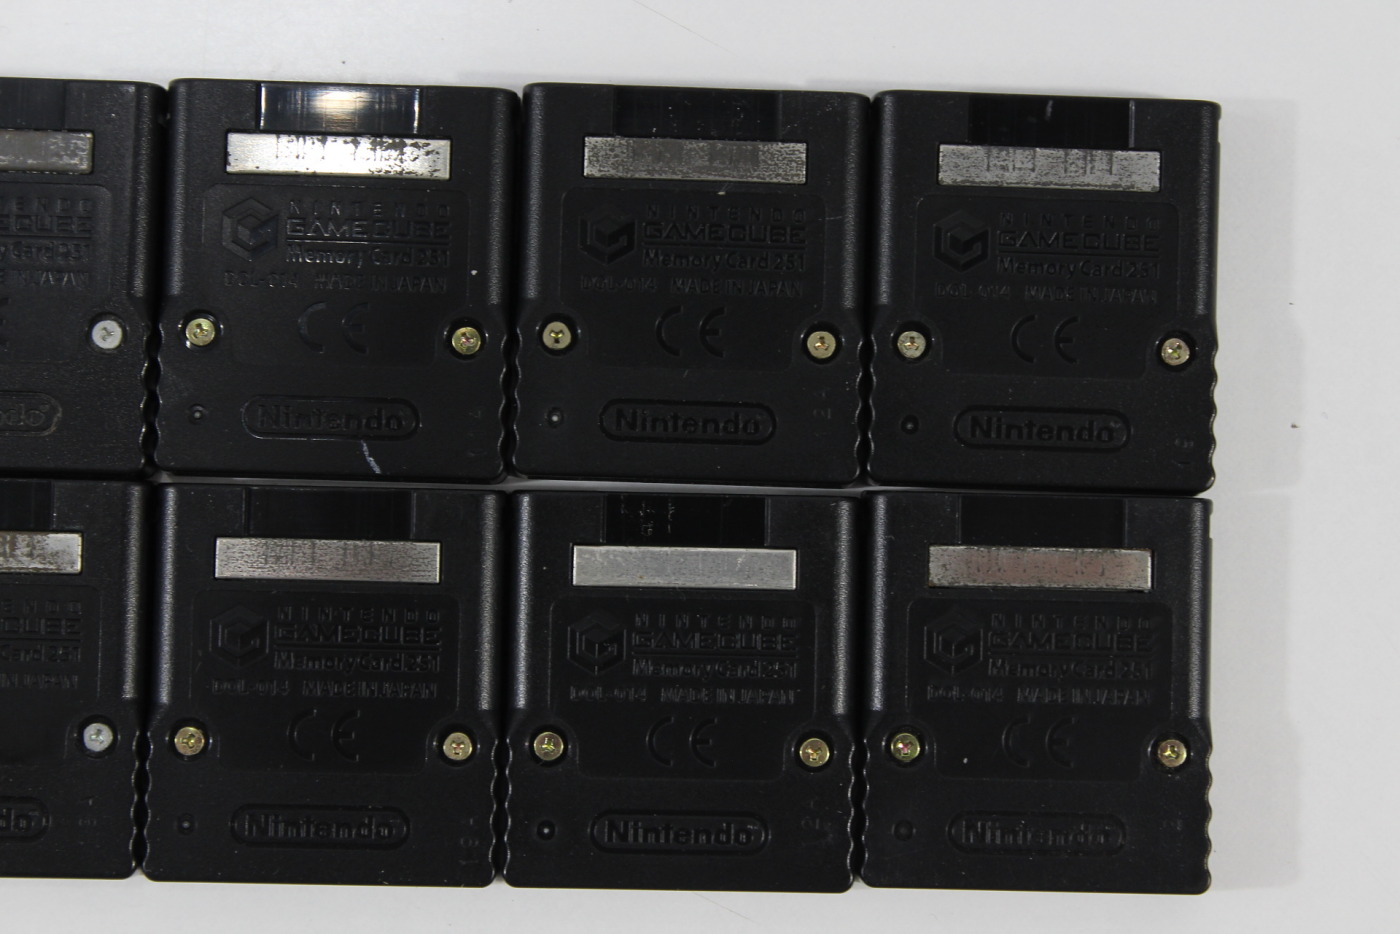 GameCube 251 Memory Card